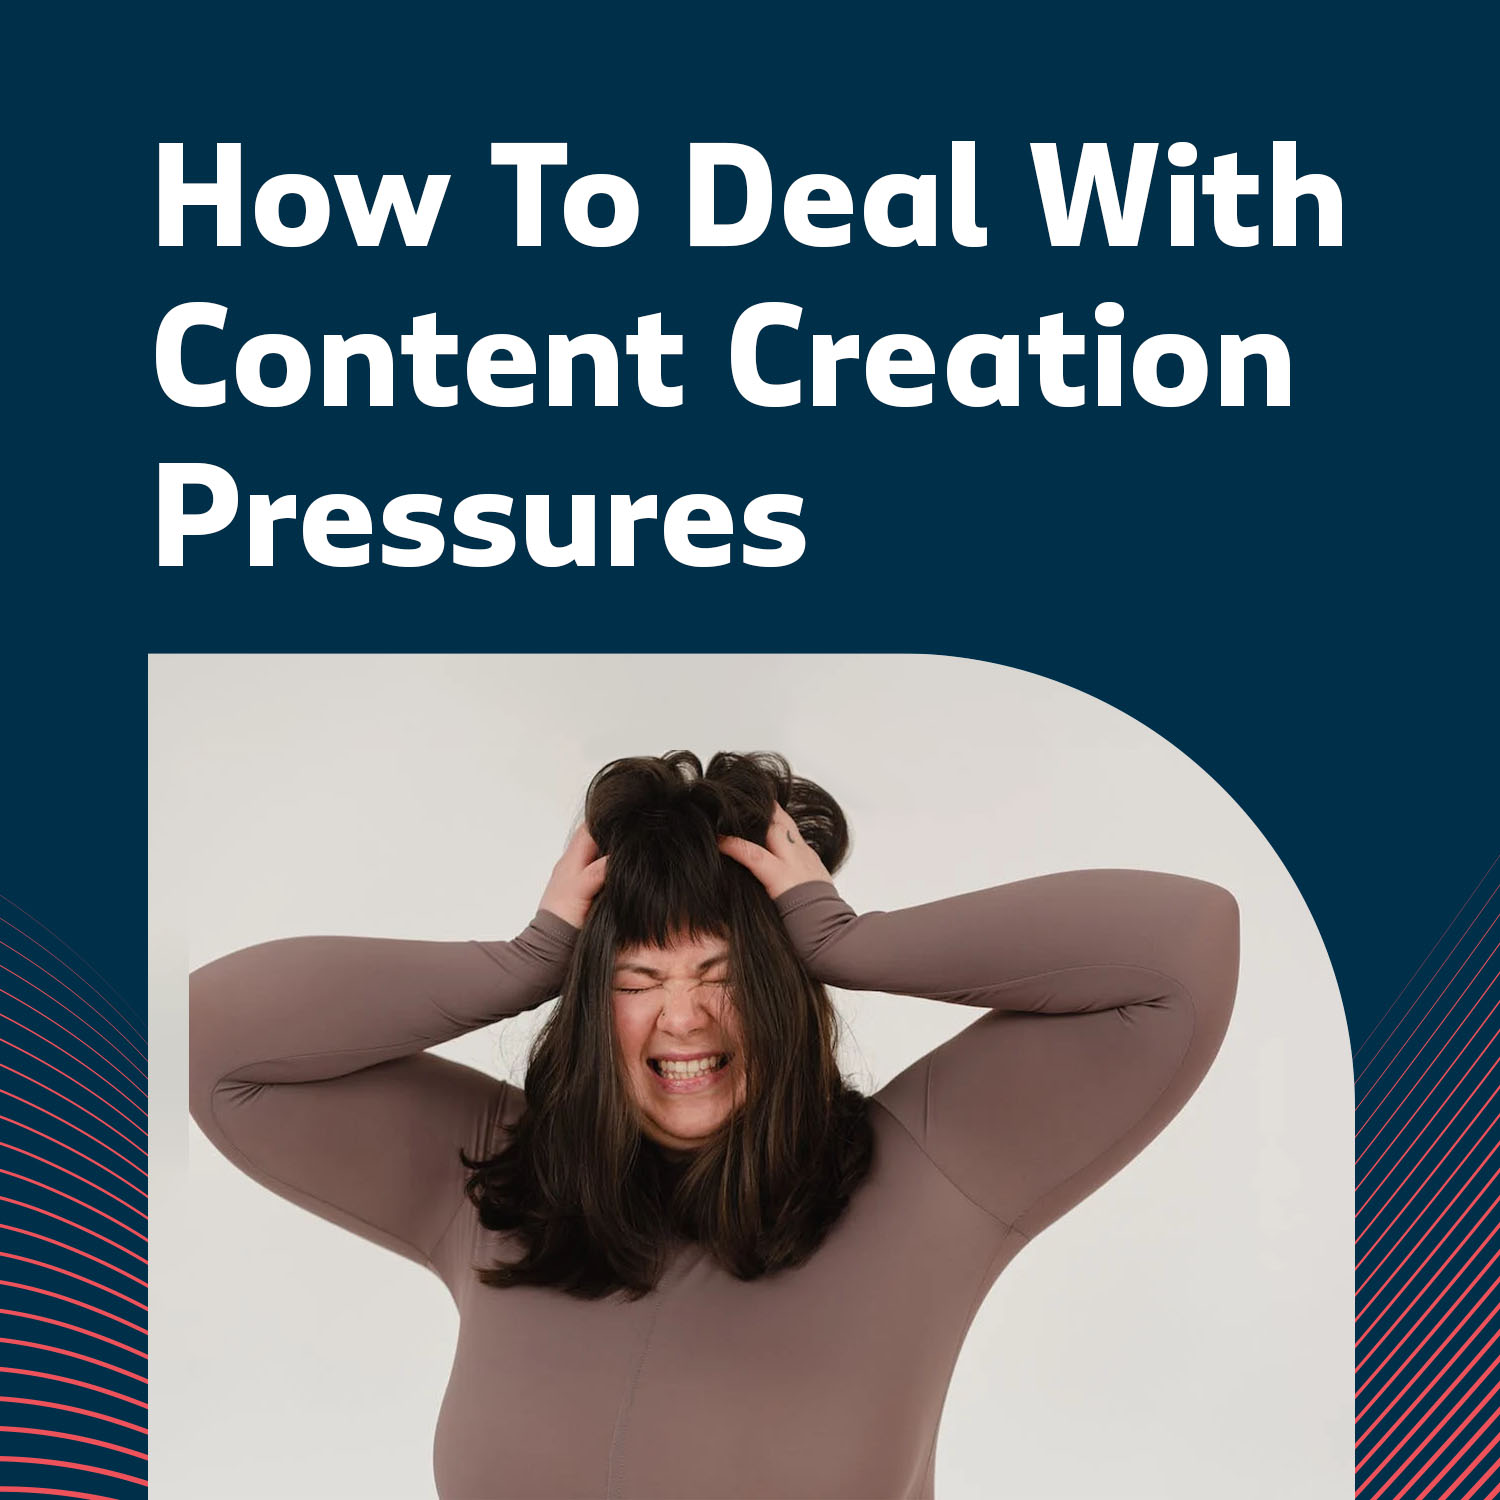 Content Creation Pressures